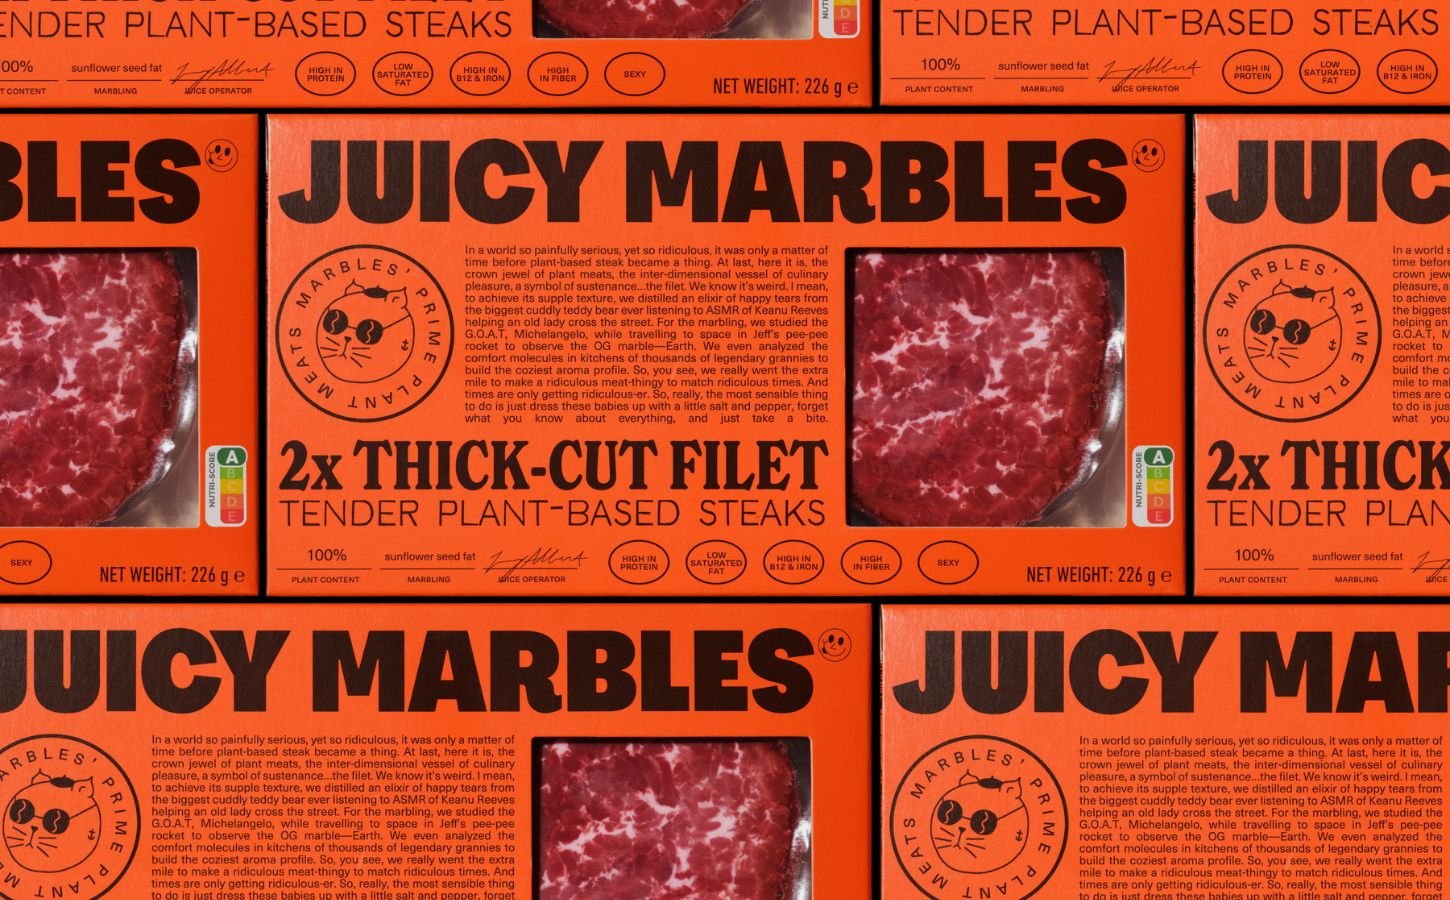 Juicy Marbles vegan steaks from Waitrose